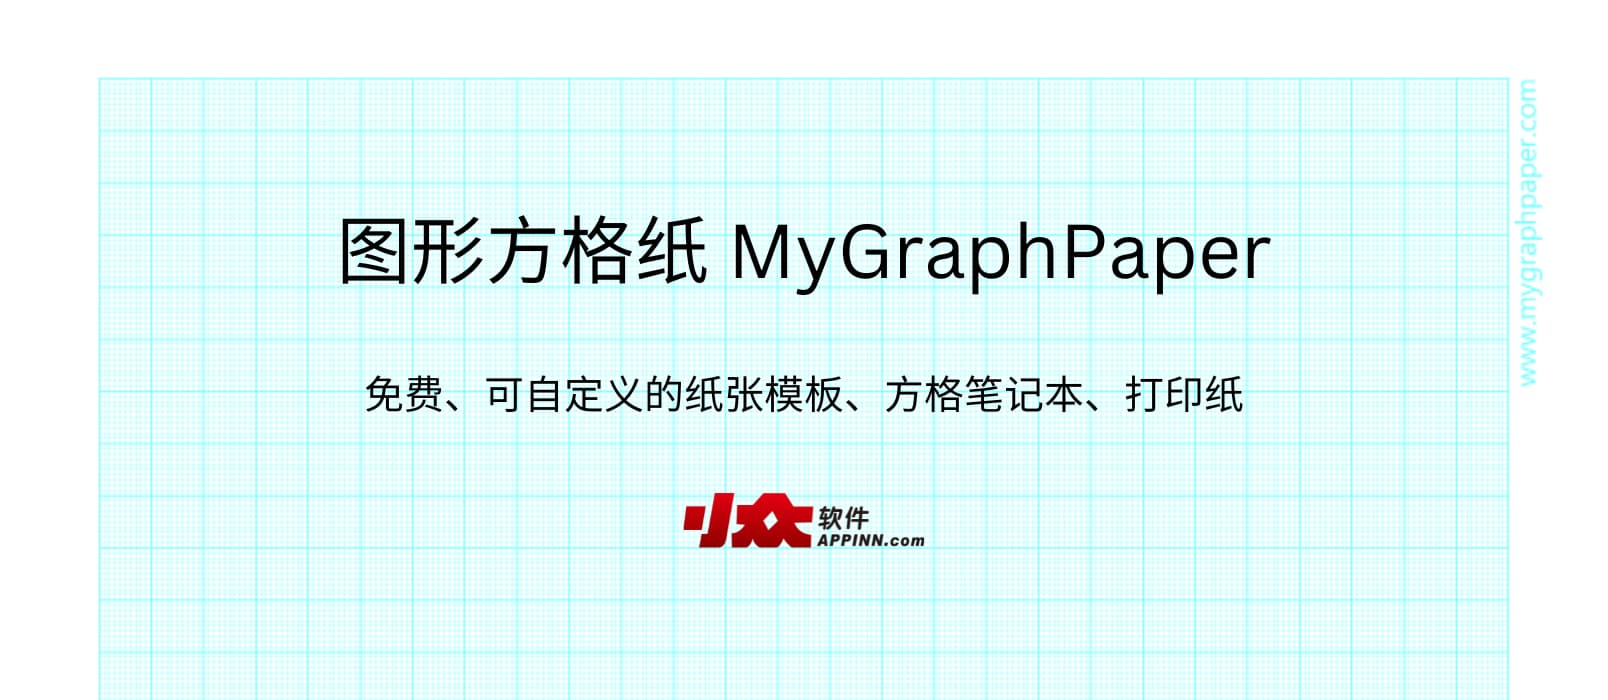 图形方格纸 MyGraphPaper - 免费、可自定义的纸张模板、方格笔记本、打印纸